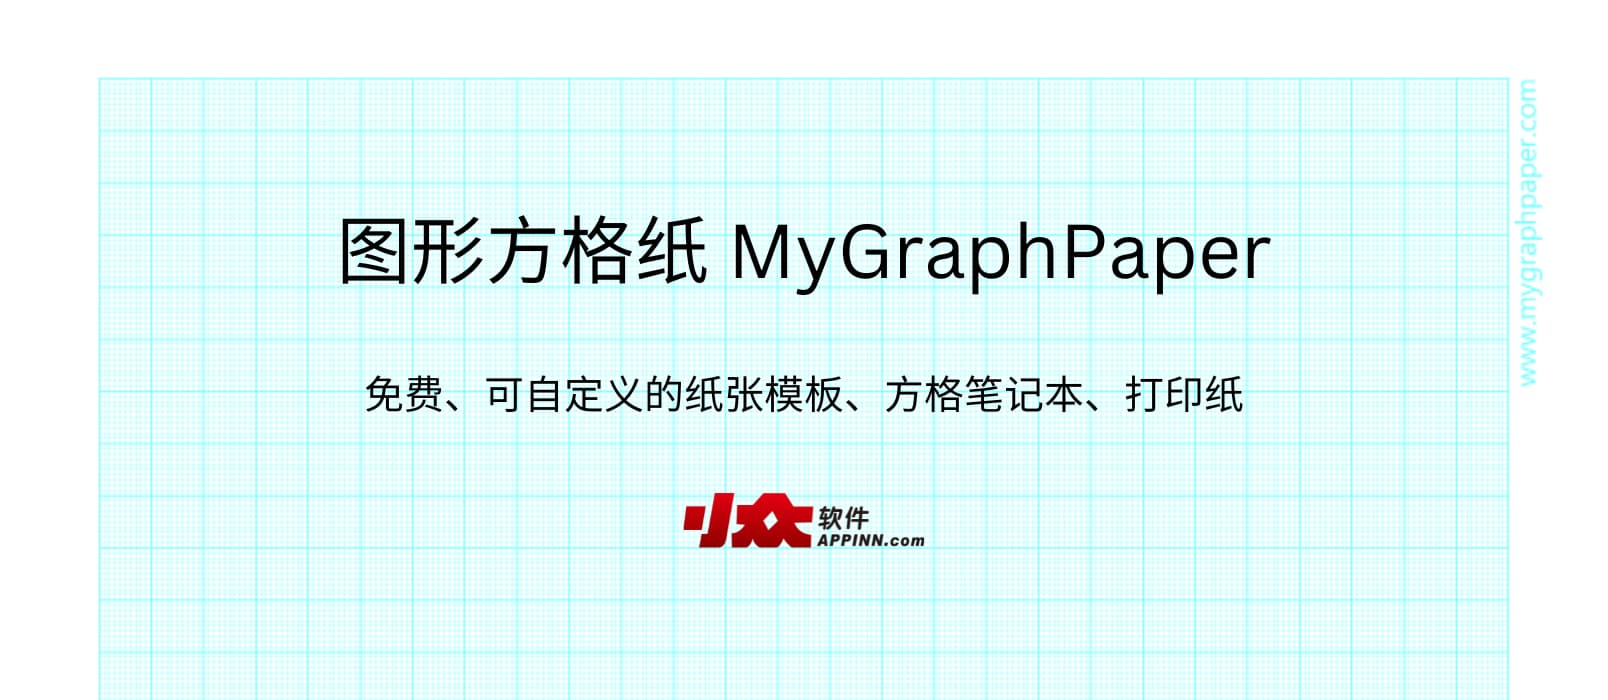 图形方格纸 MyGraphPaper - 免费、可自定义的纸张模板、方格笔记本、打印纸